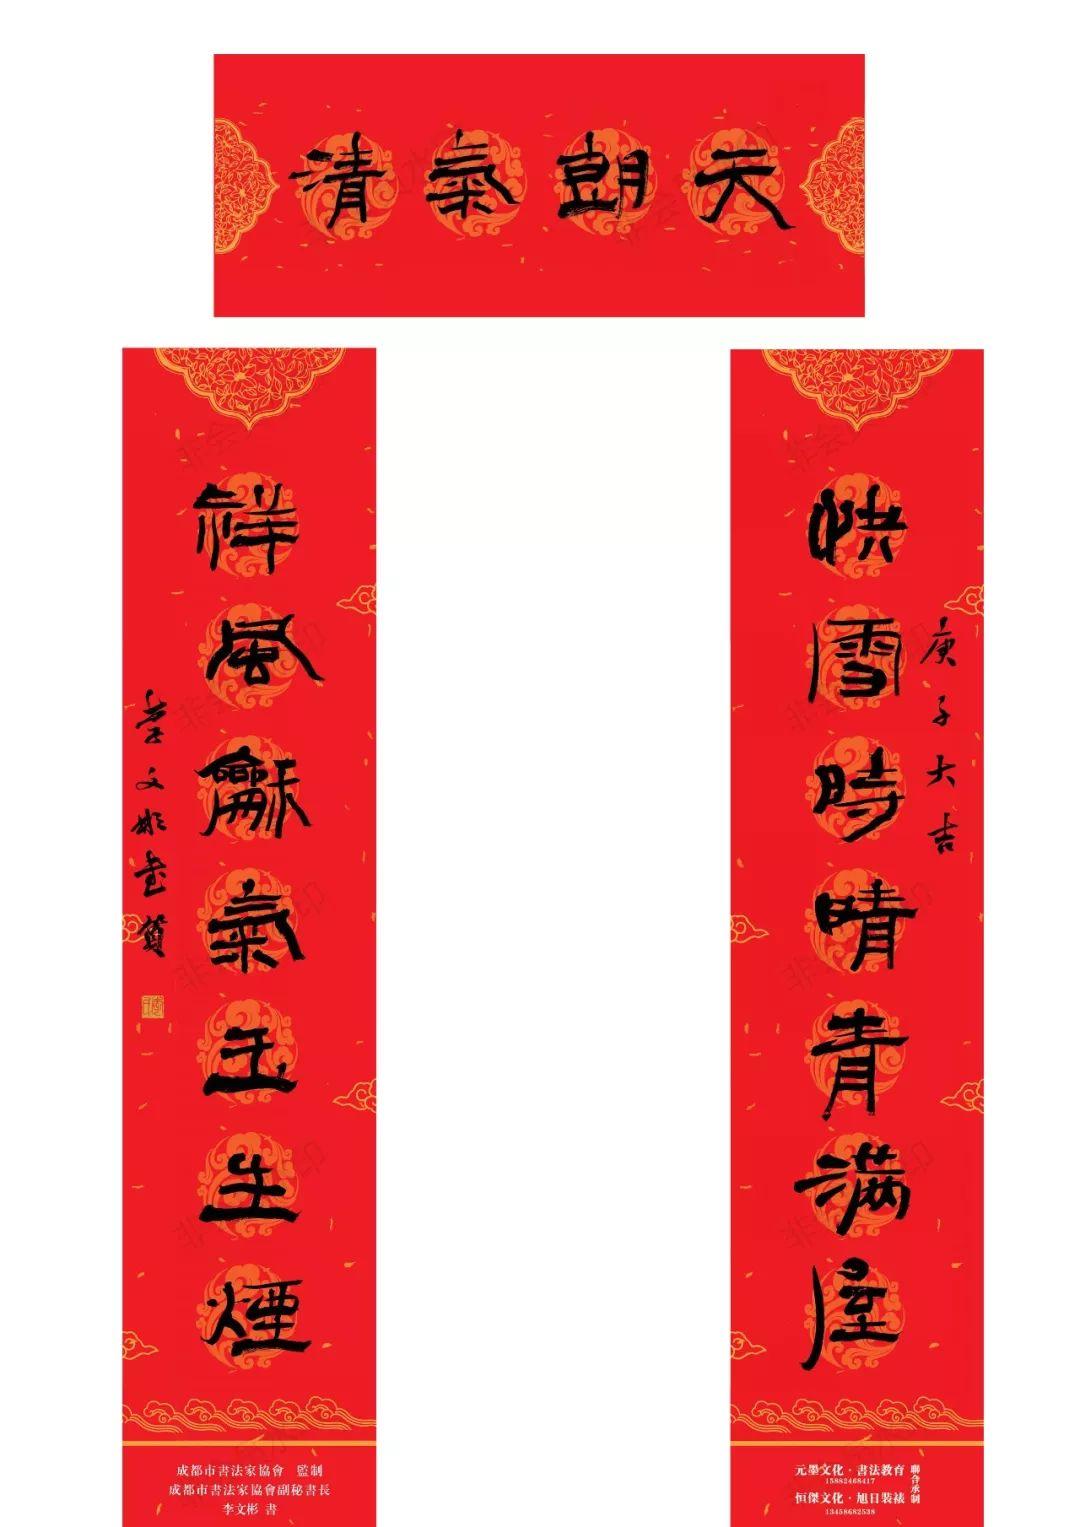 成都市文联、成都市书法家协会联合四川艺术网恭祝大家新年快乐